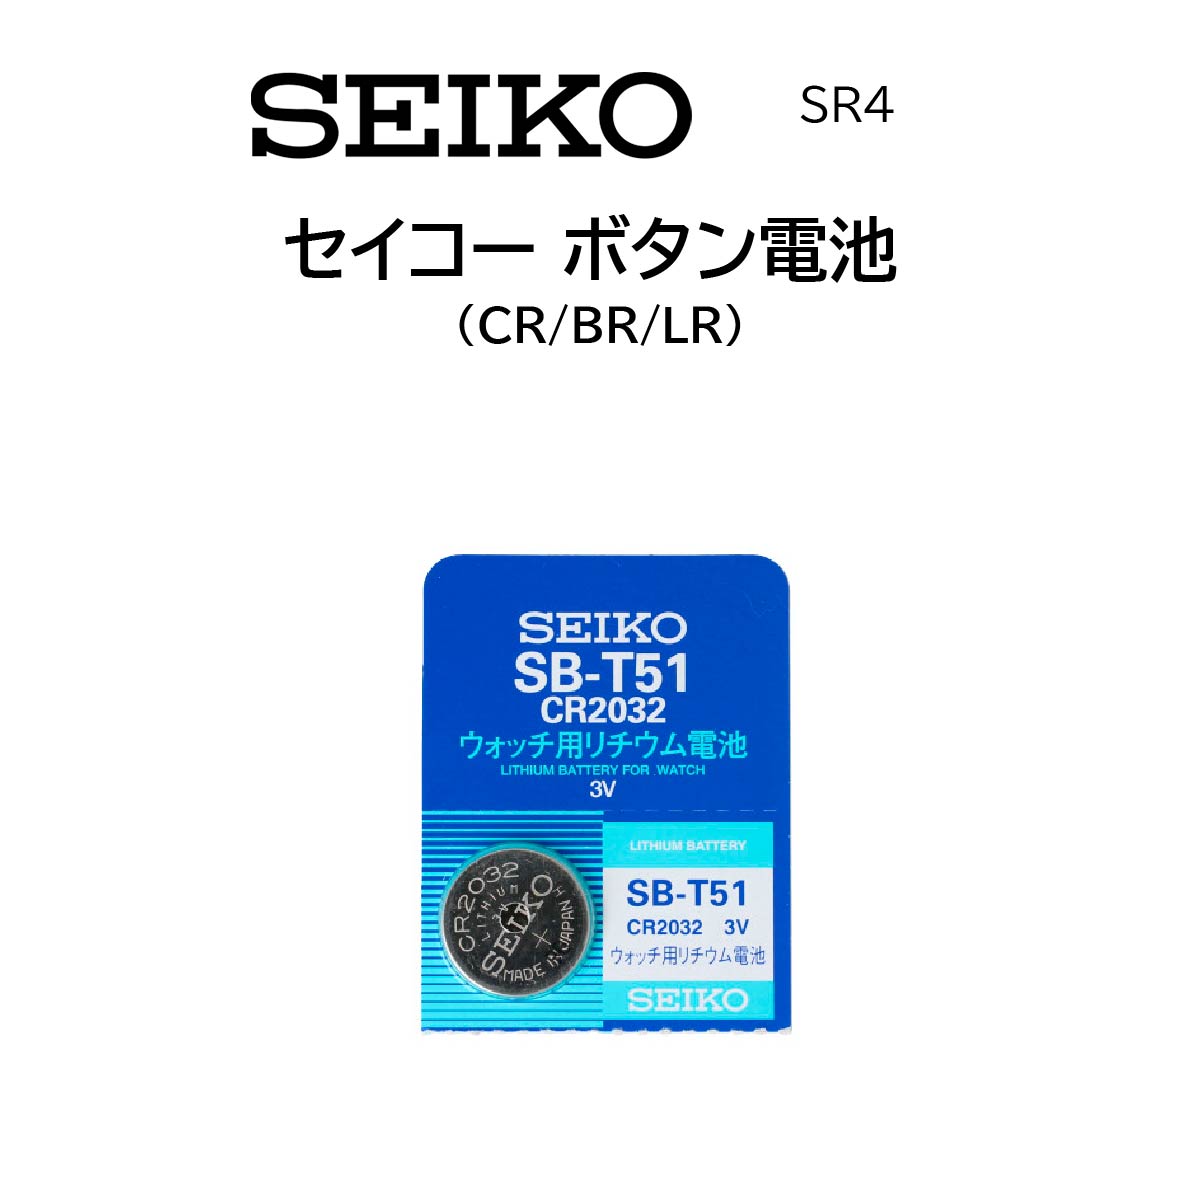 時計部品 SEIKO セイコー ウォッチ用リチウム電池 CR BR LR ボタン電池 腕時計 体温計 電池交換 送料無料